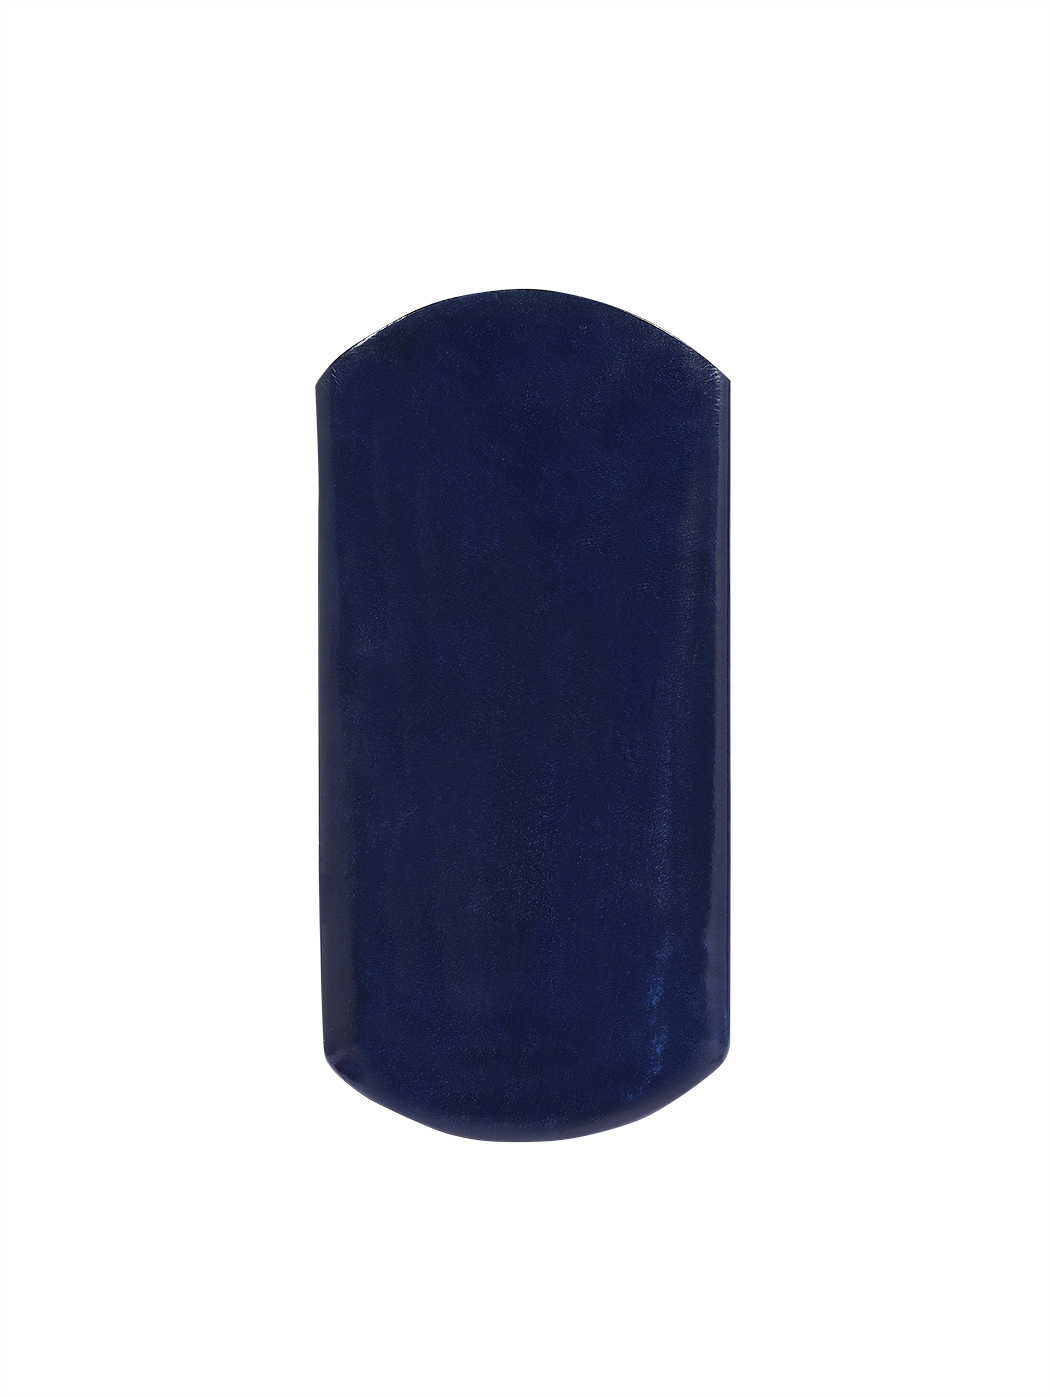 Кожаный футляр для очков ручной работы синего цвета